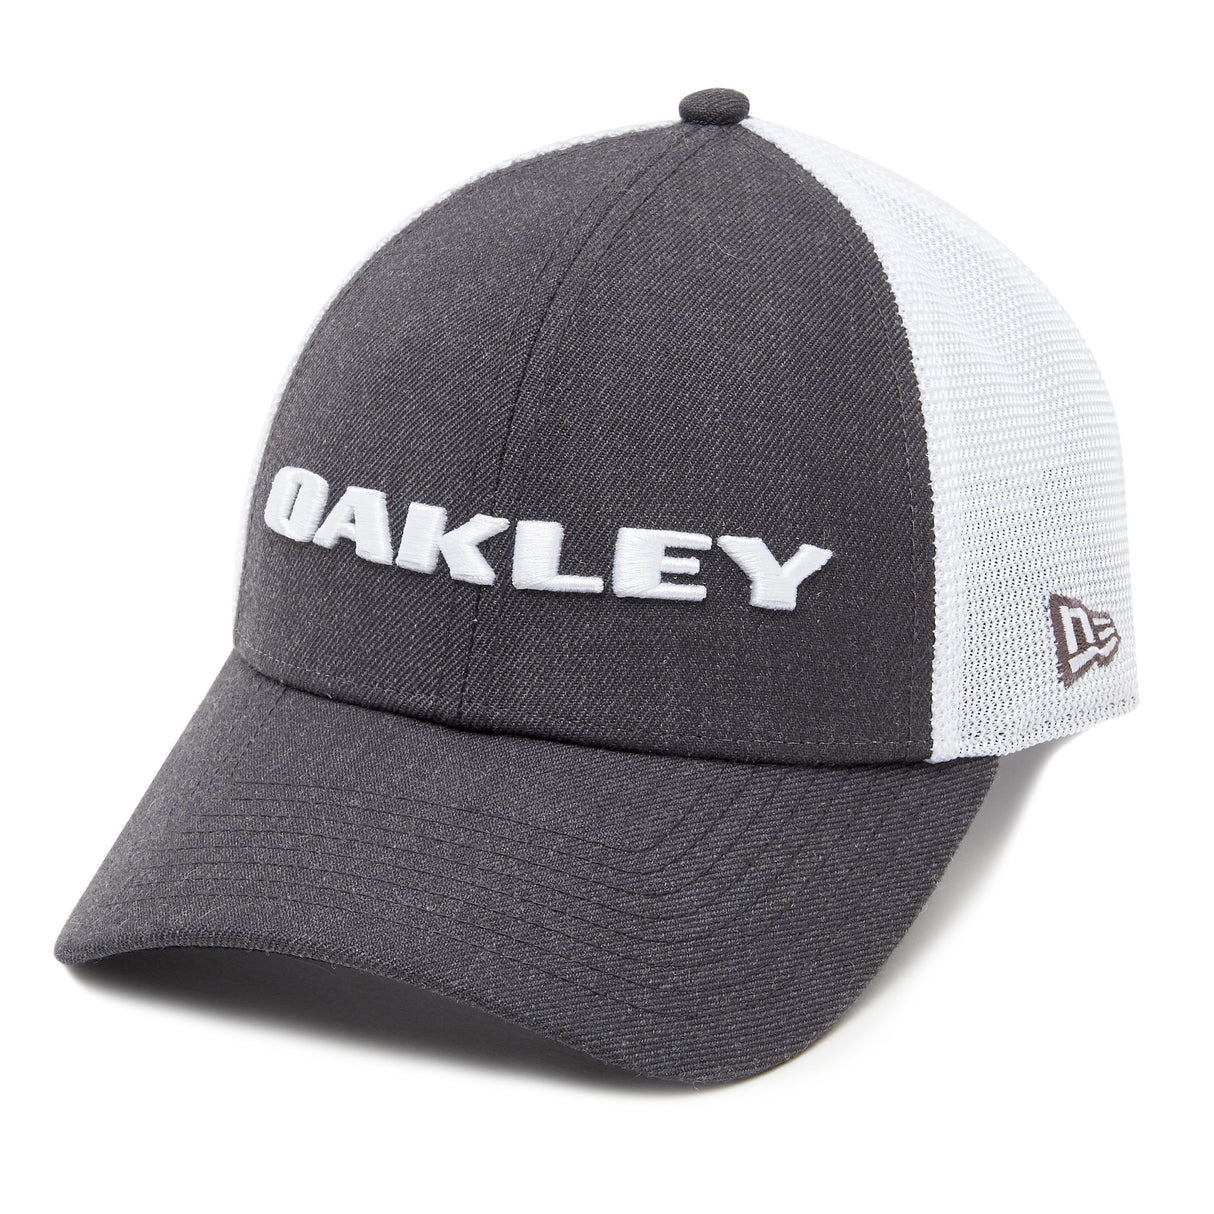 Oakley Heather New Era Hat Graphite